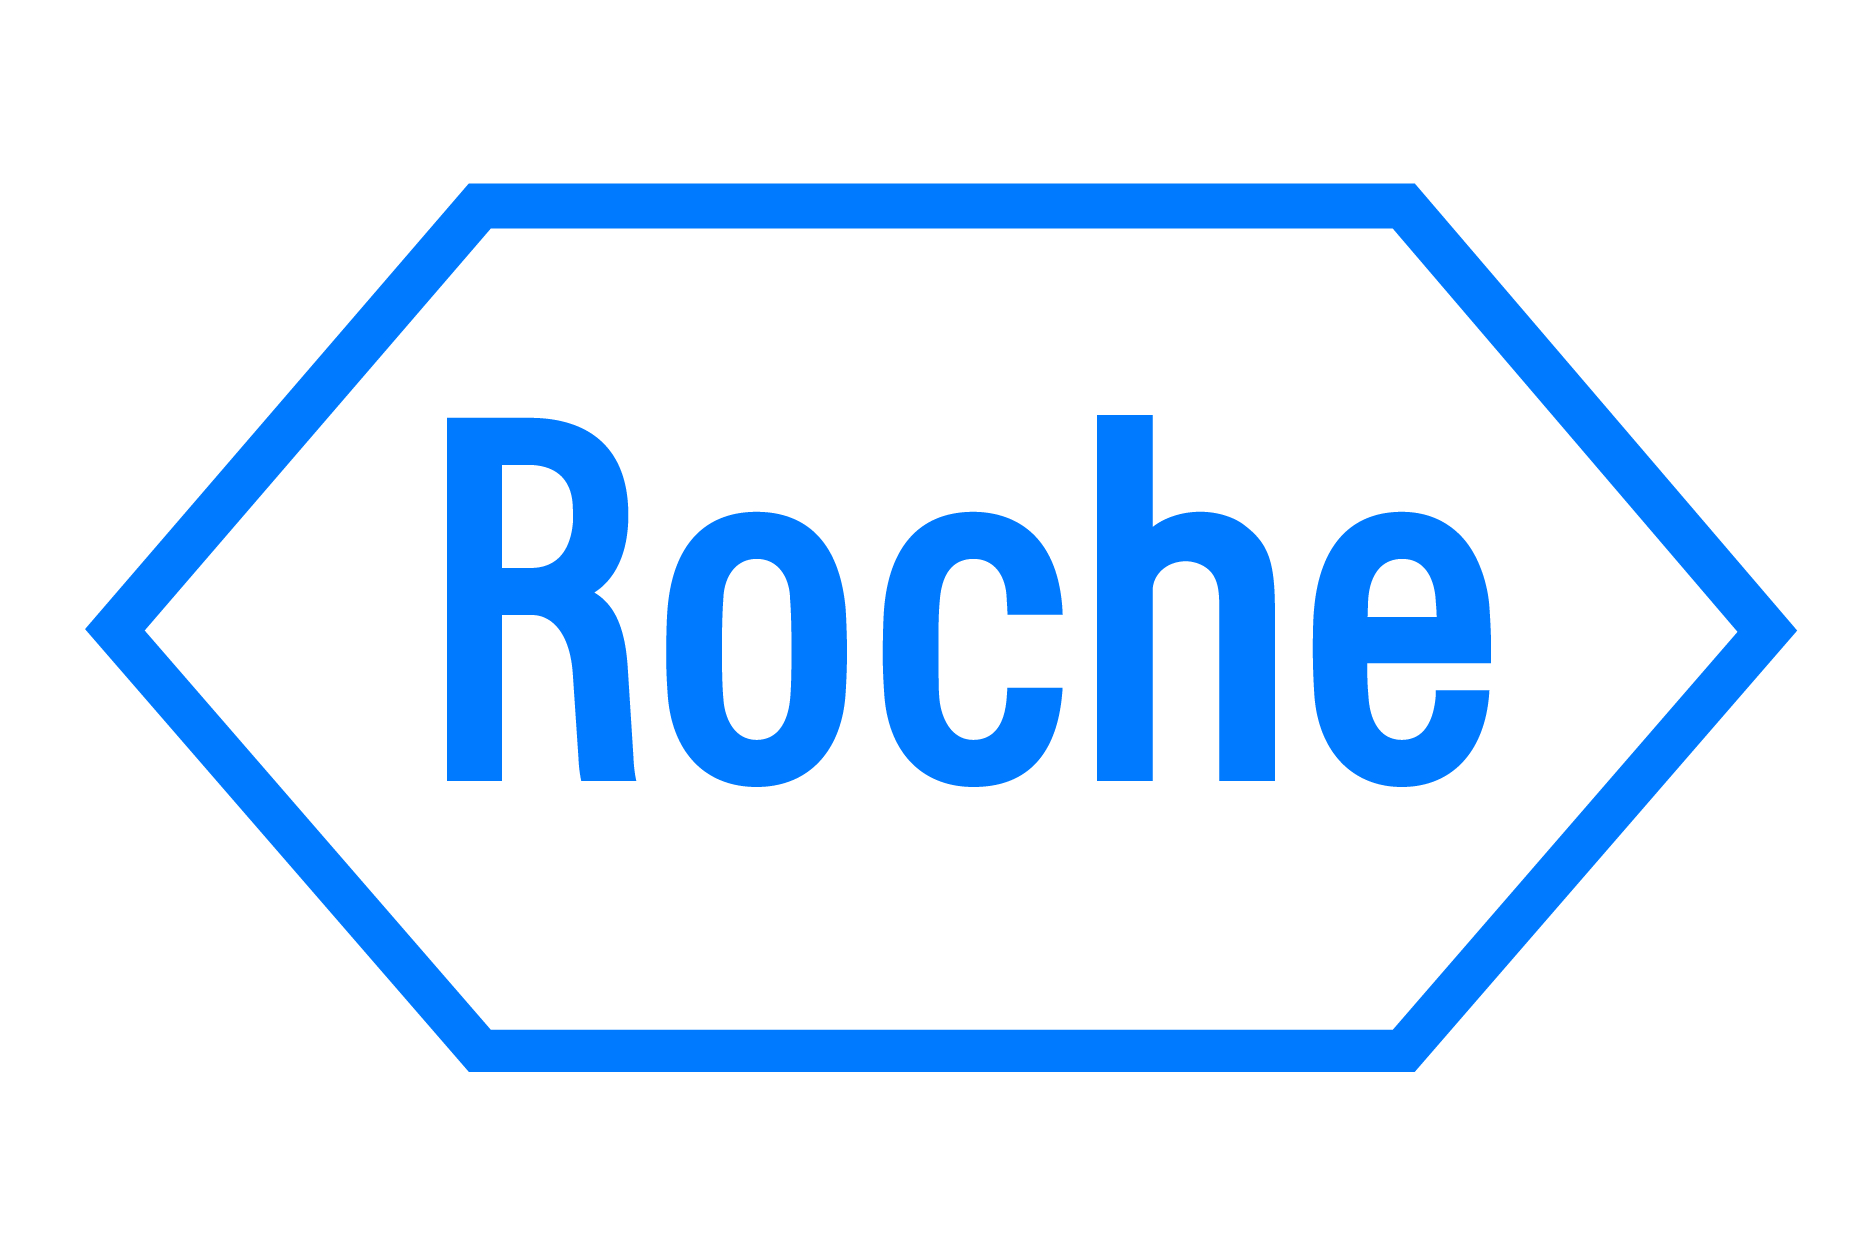 Opham - Roche